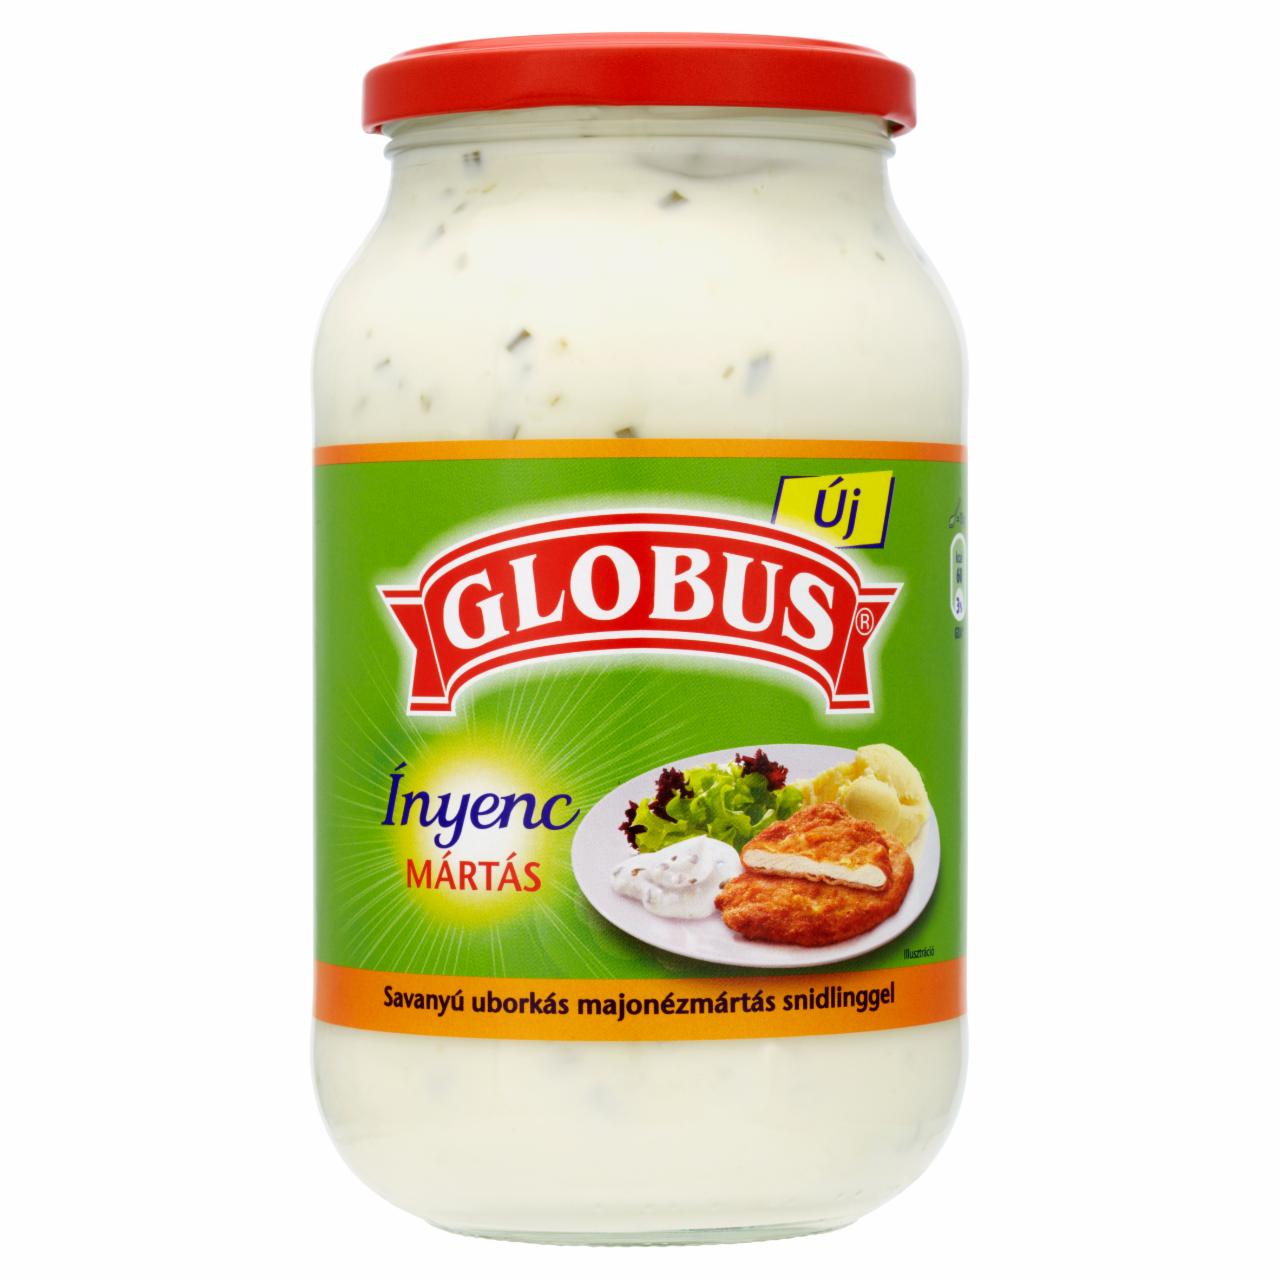 Képek - Globus Ínyenc Mártás savanyú uborkás majonézmártás snidlinggel 656 g